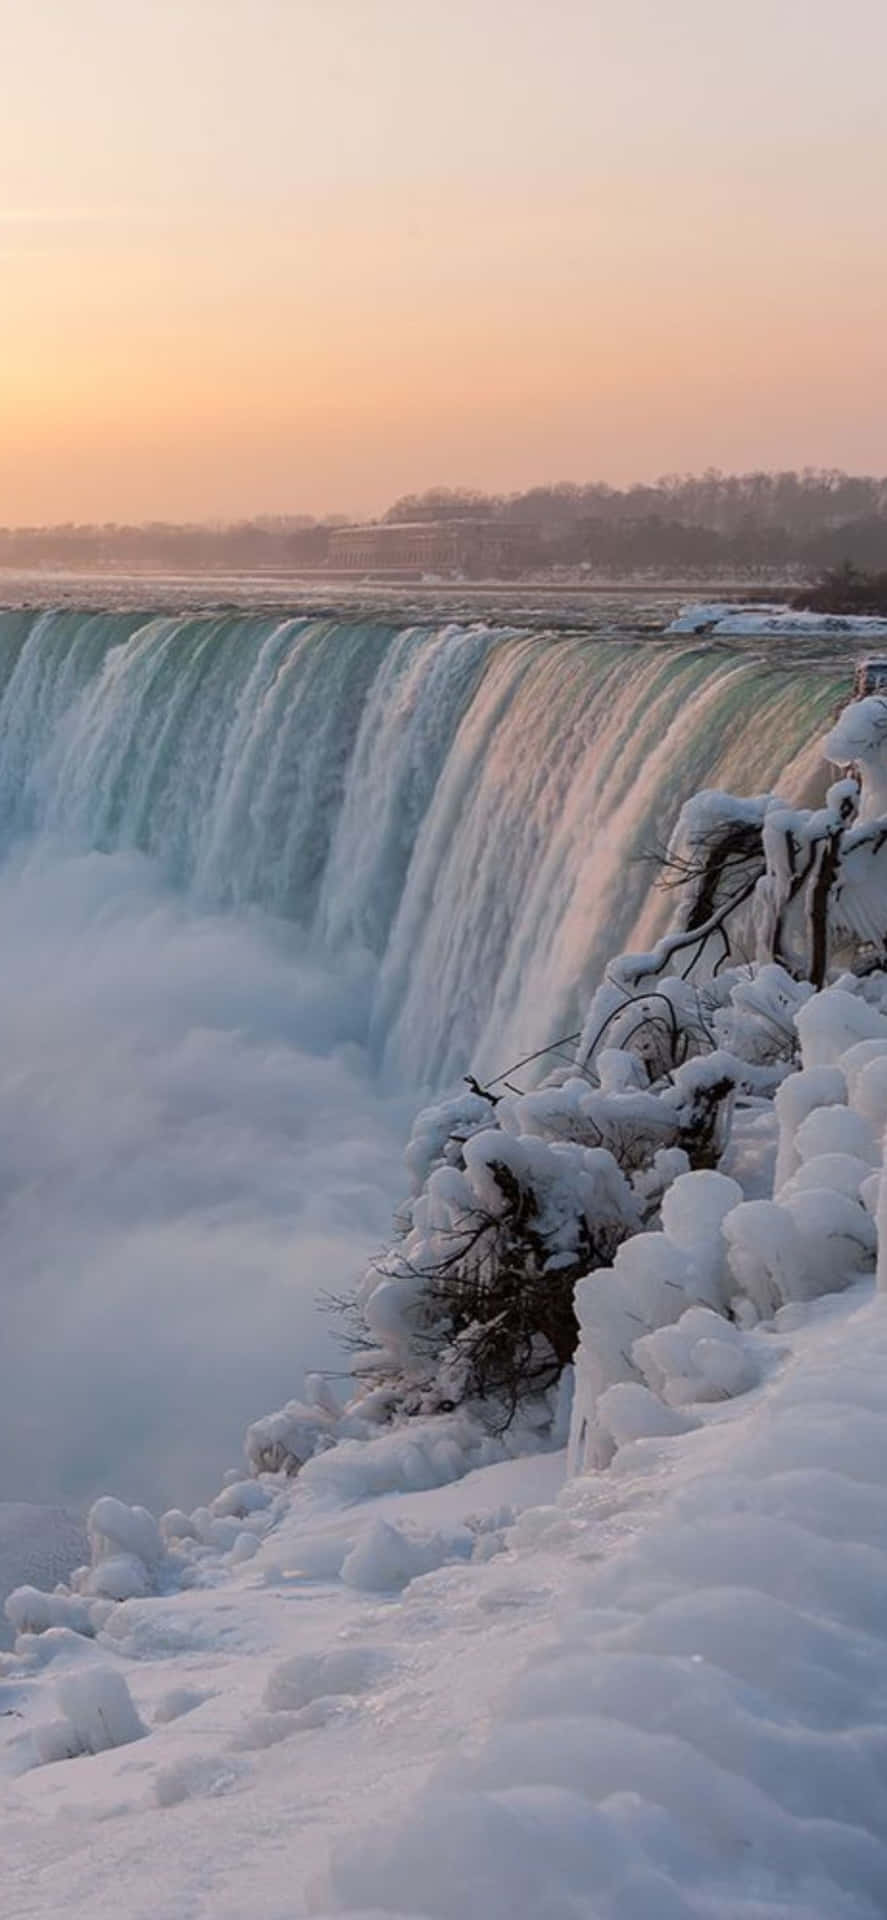 Iphonex Bakgrundsbild Med Snö Vid Niagara Falls.